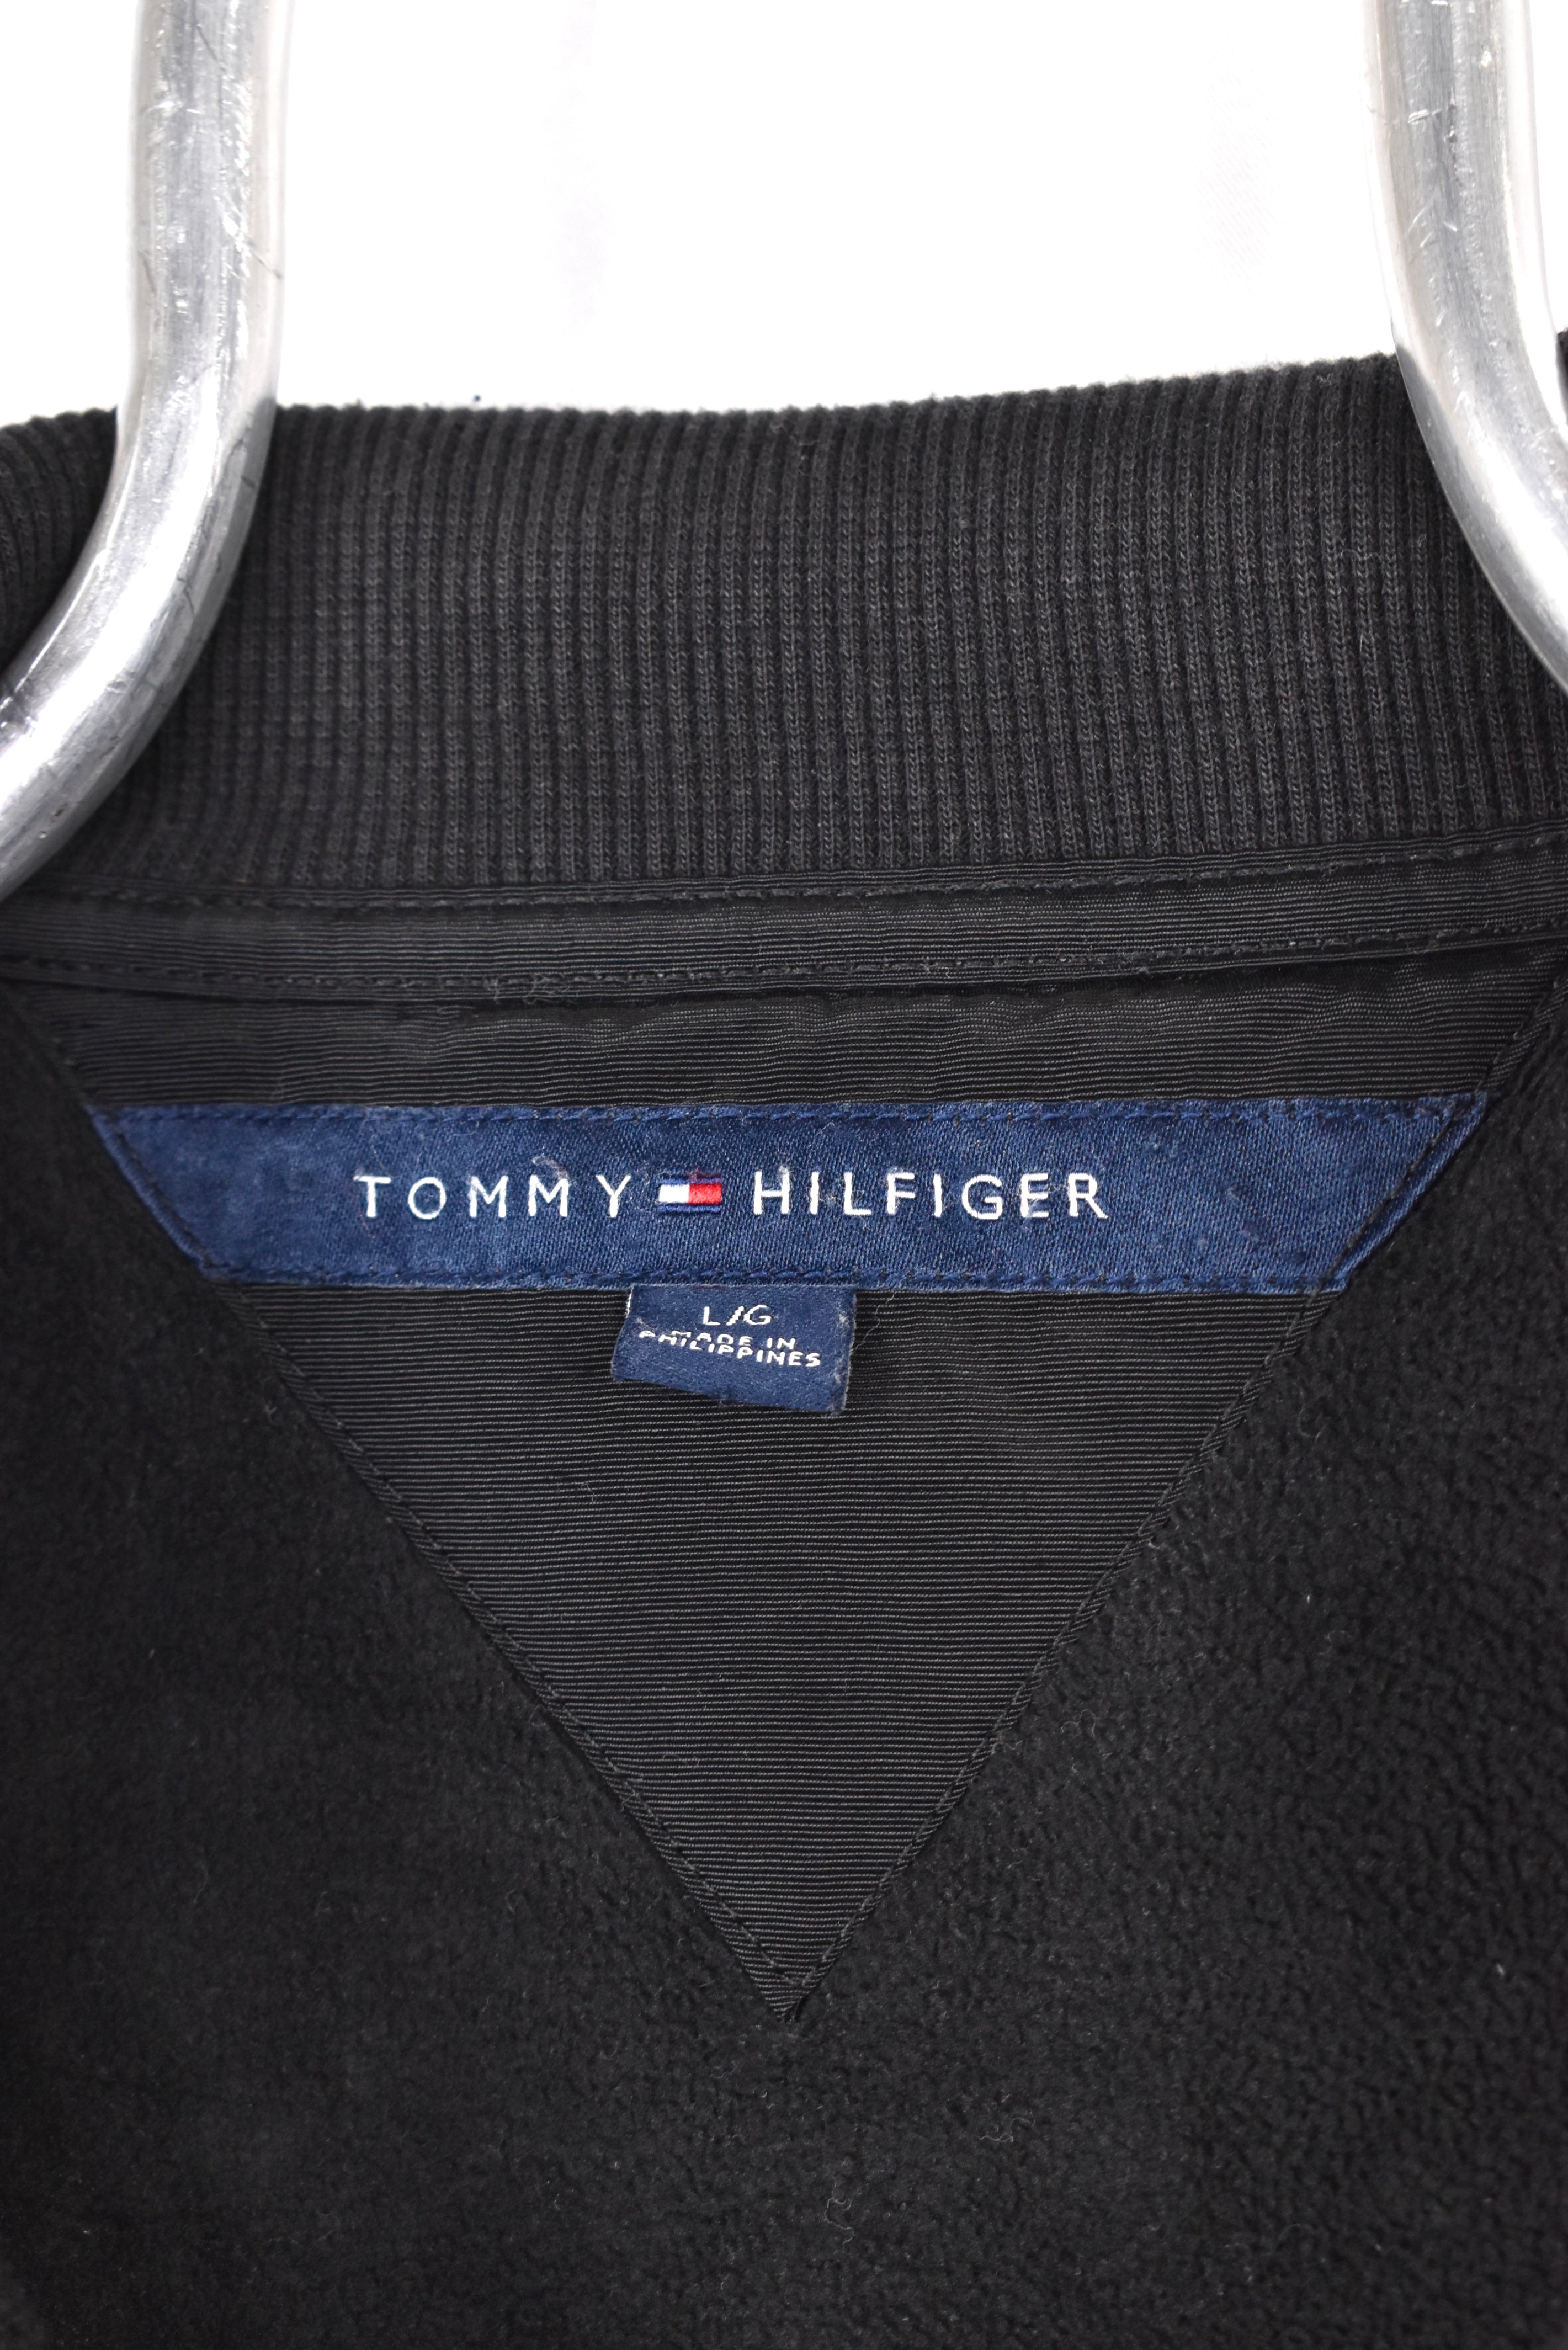 Vintage Tommy Hilfiger jacket, black heavy coat - AU L TOMMY HILFIGER